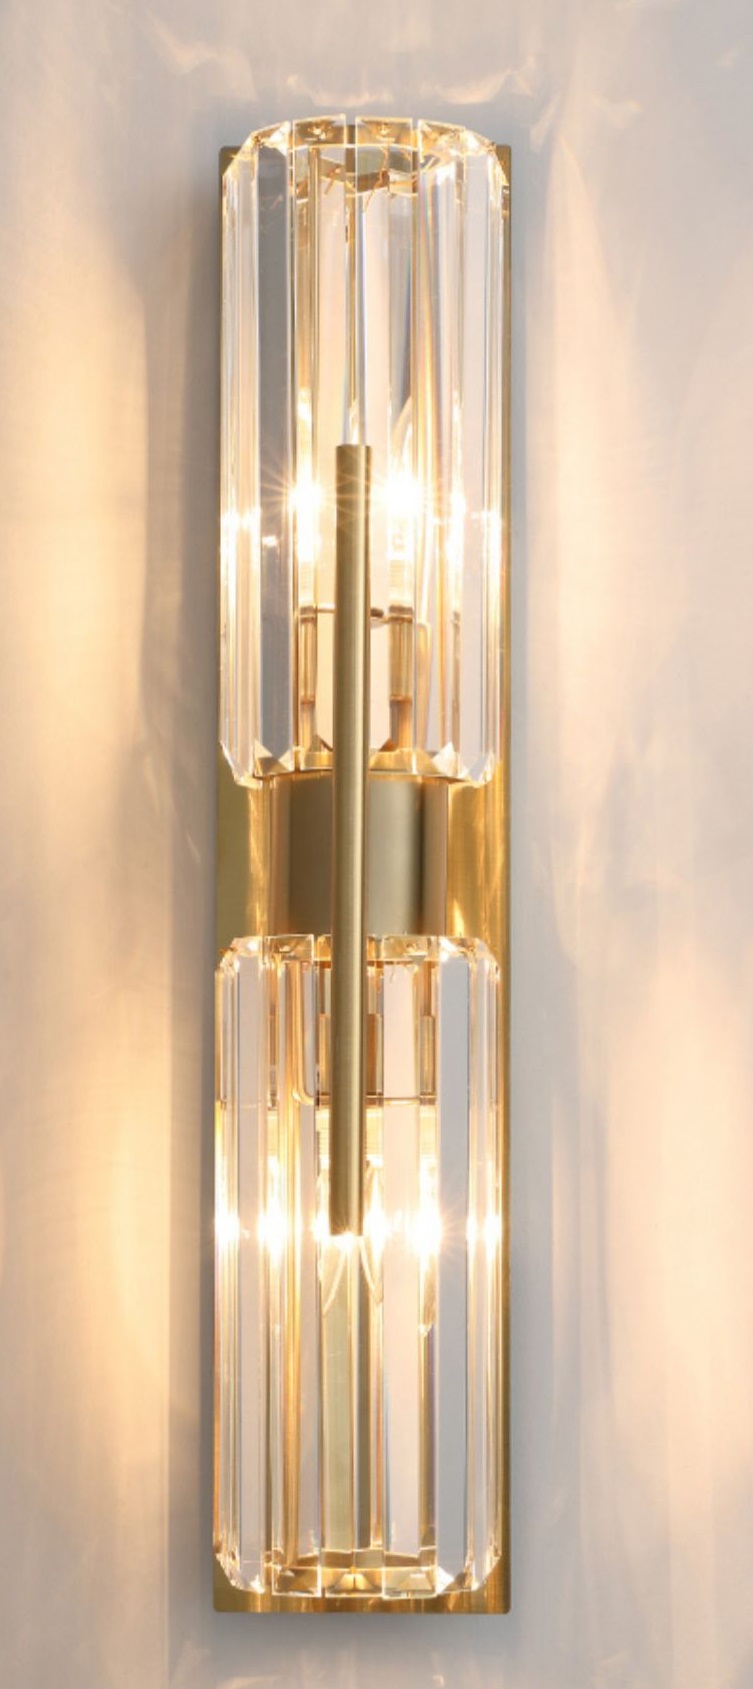 真鍮調クリスタルシェードのブラケットライト「CO-COSK1019-1」2灯正面